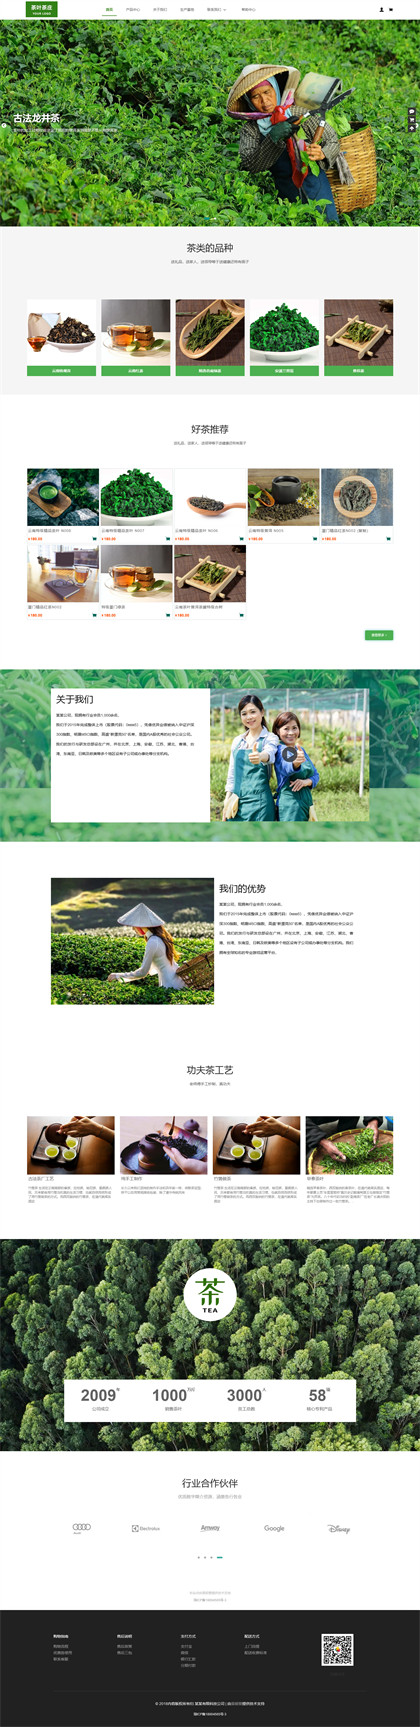 茶叶茶庄-绿茶红茶批发-商城网站模板网站模板图片